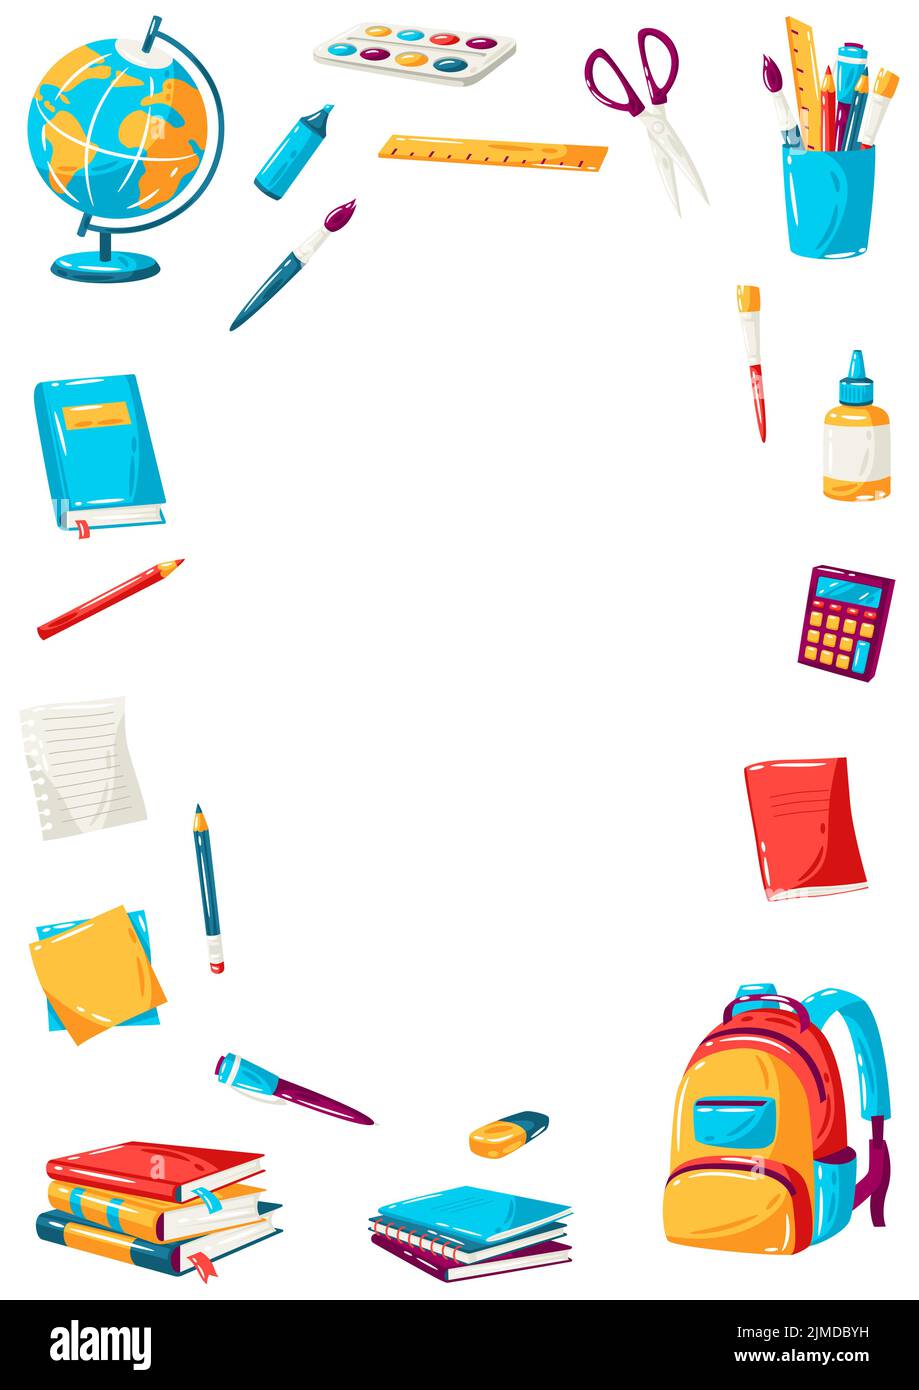 Schulrahmen mit Bildungsartikeln. Illustration von bunten Materialien und Papeterie. Stock Vektor